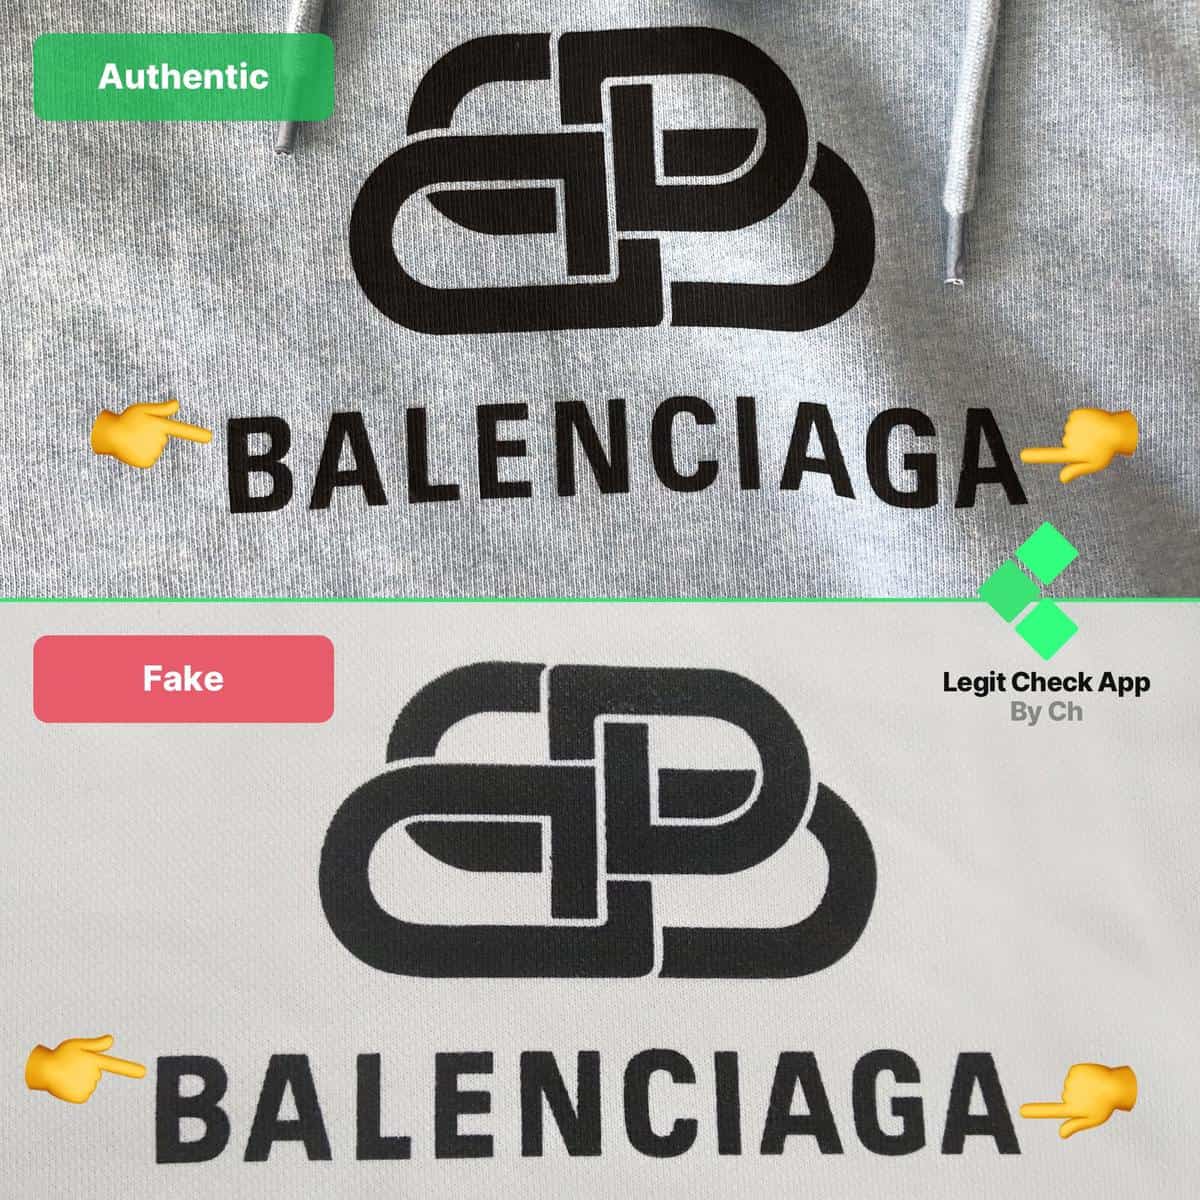 How To Spot Fake Balenciaga - Legit Check